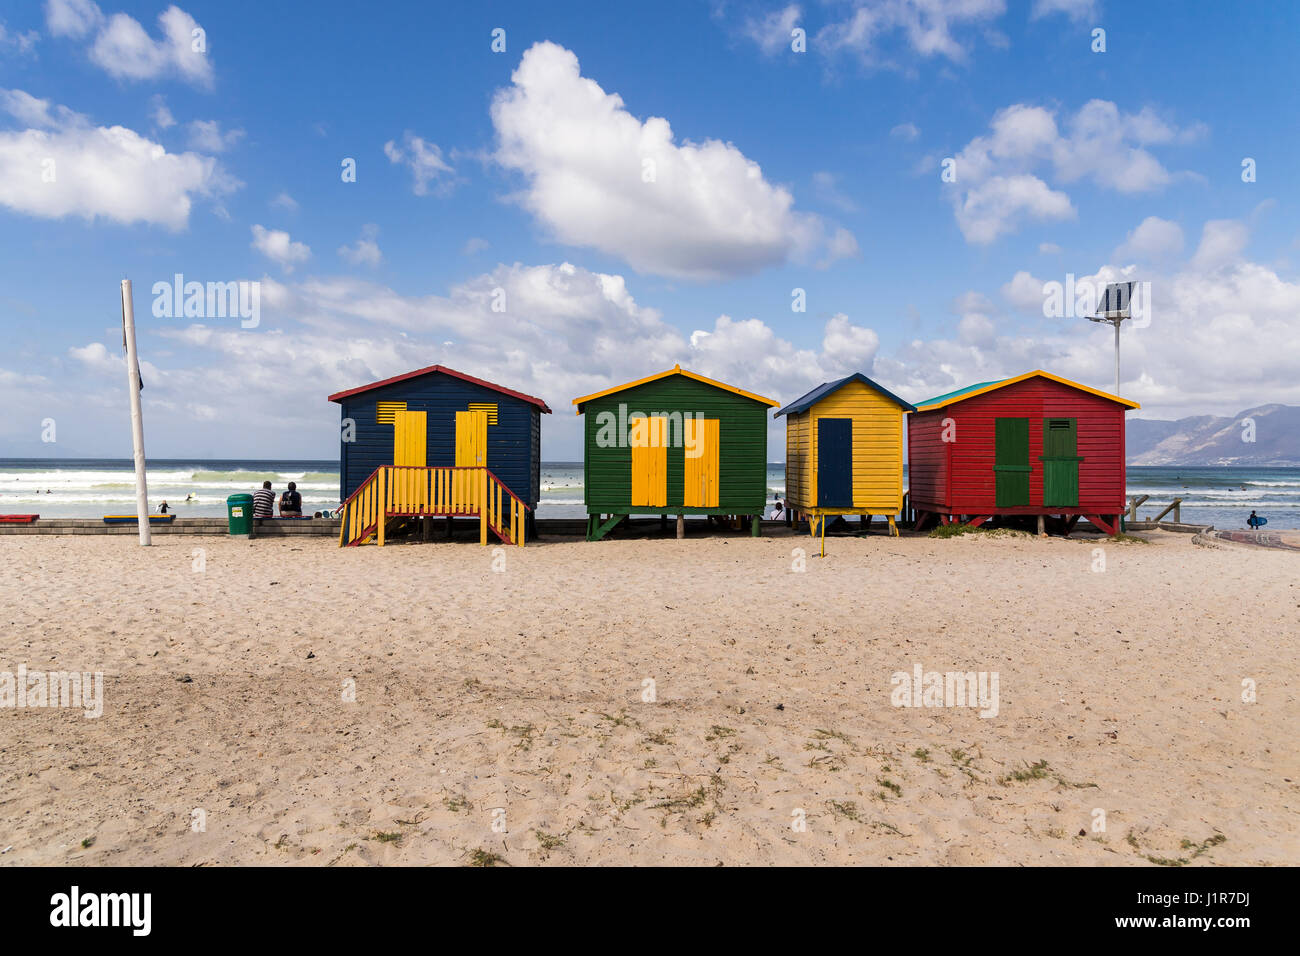 Spiaggia di colorate case con il cielo nuvoloso, Muizenberg, Western Cape, Sud Africa Foto Stock